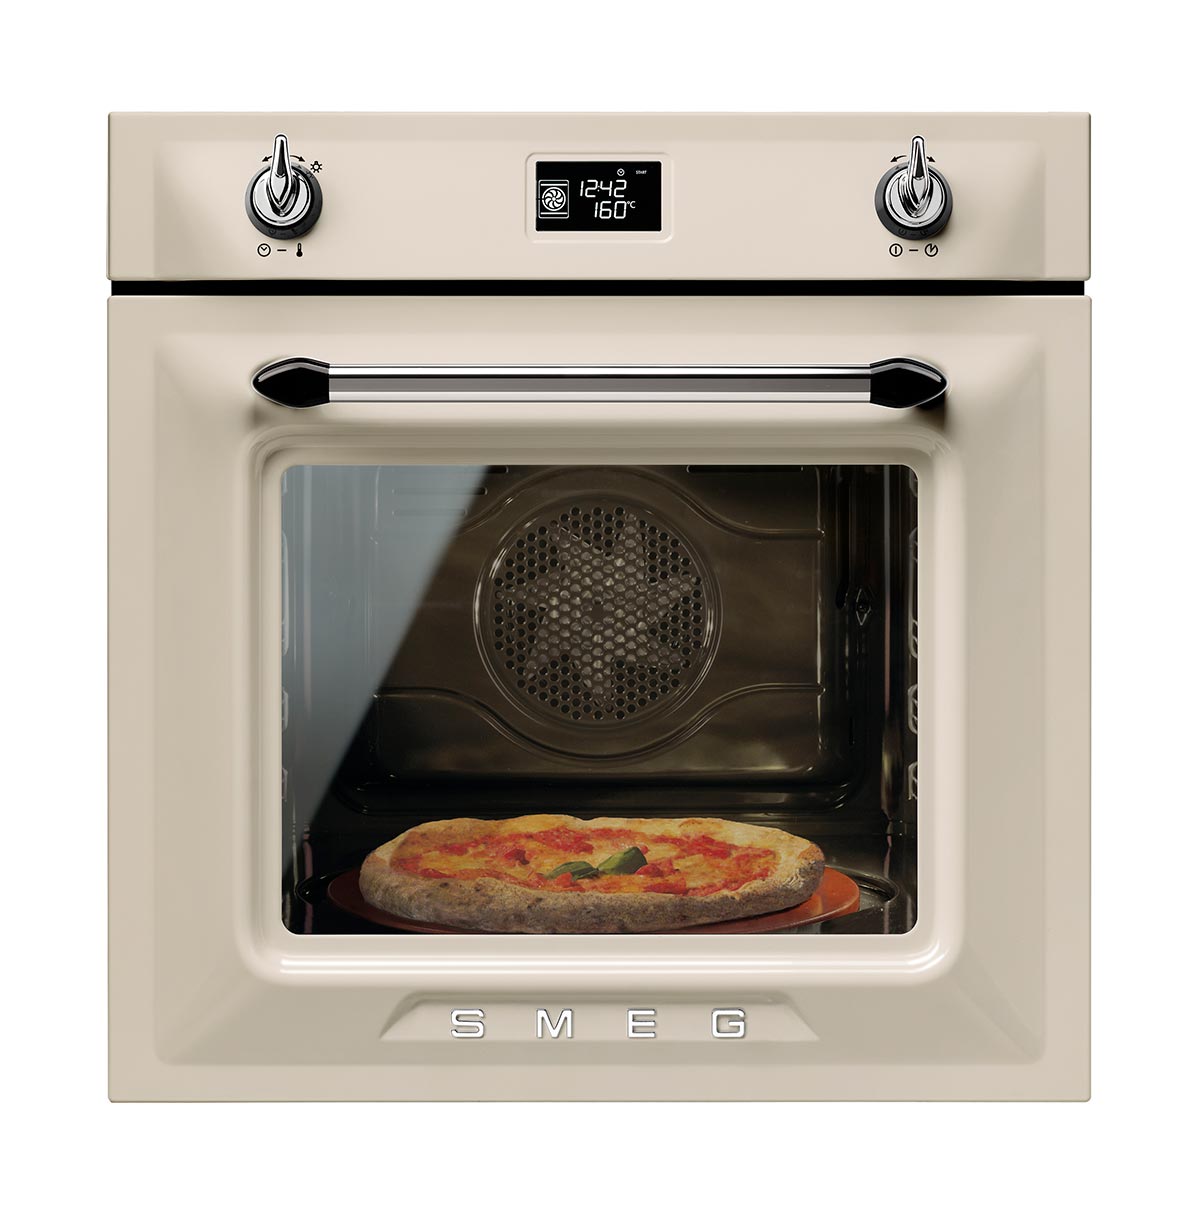 Smeg-pizza-oven